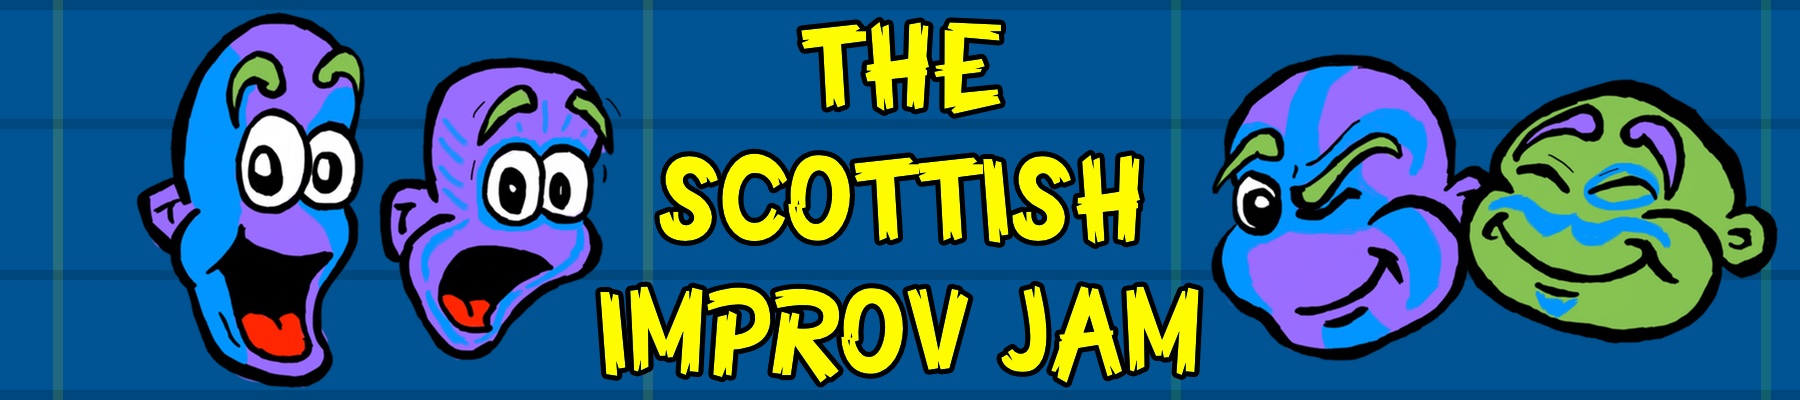 The Scottish Improv Jam